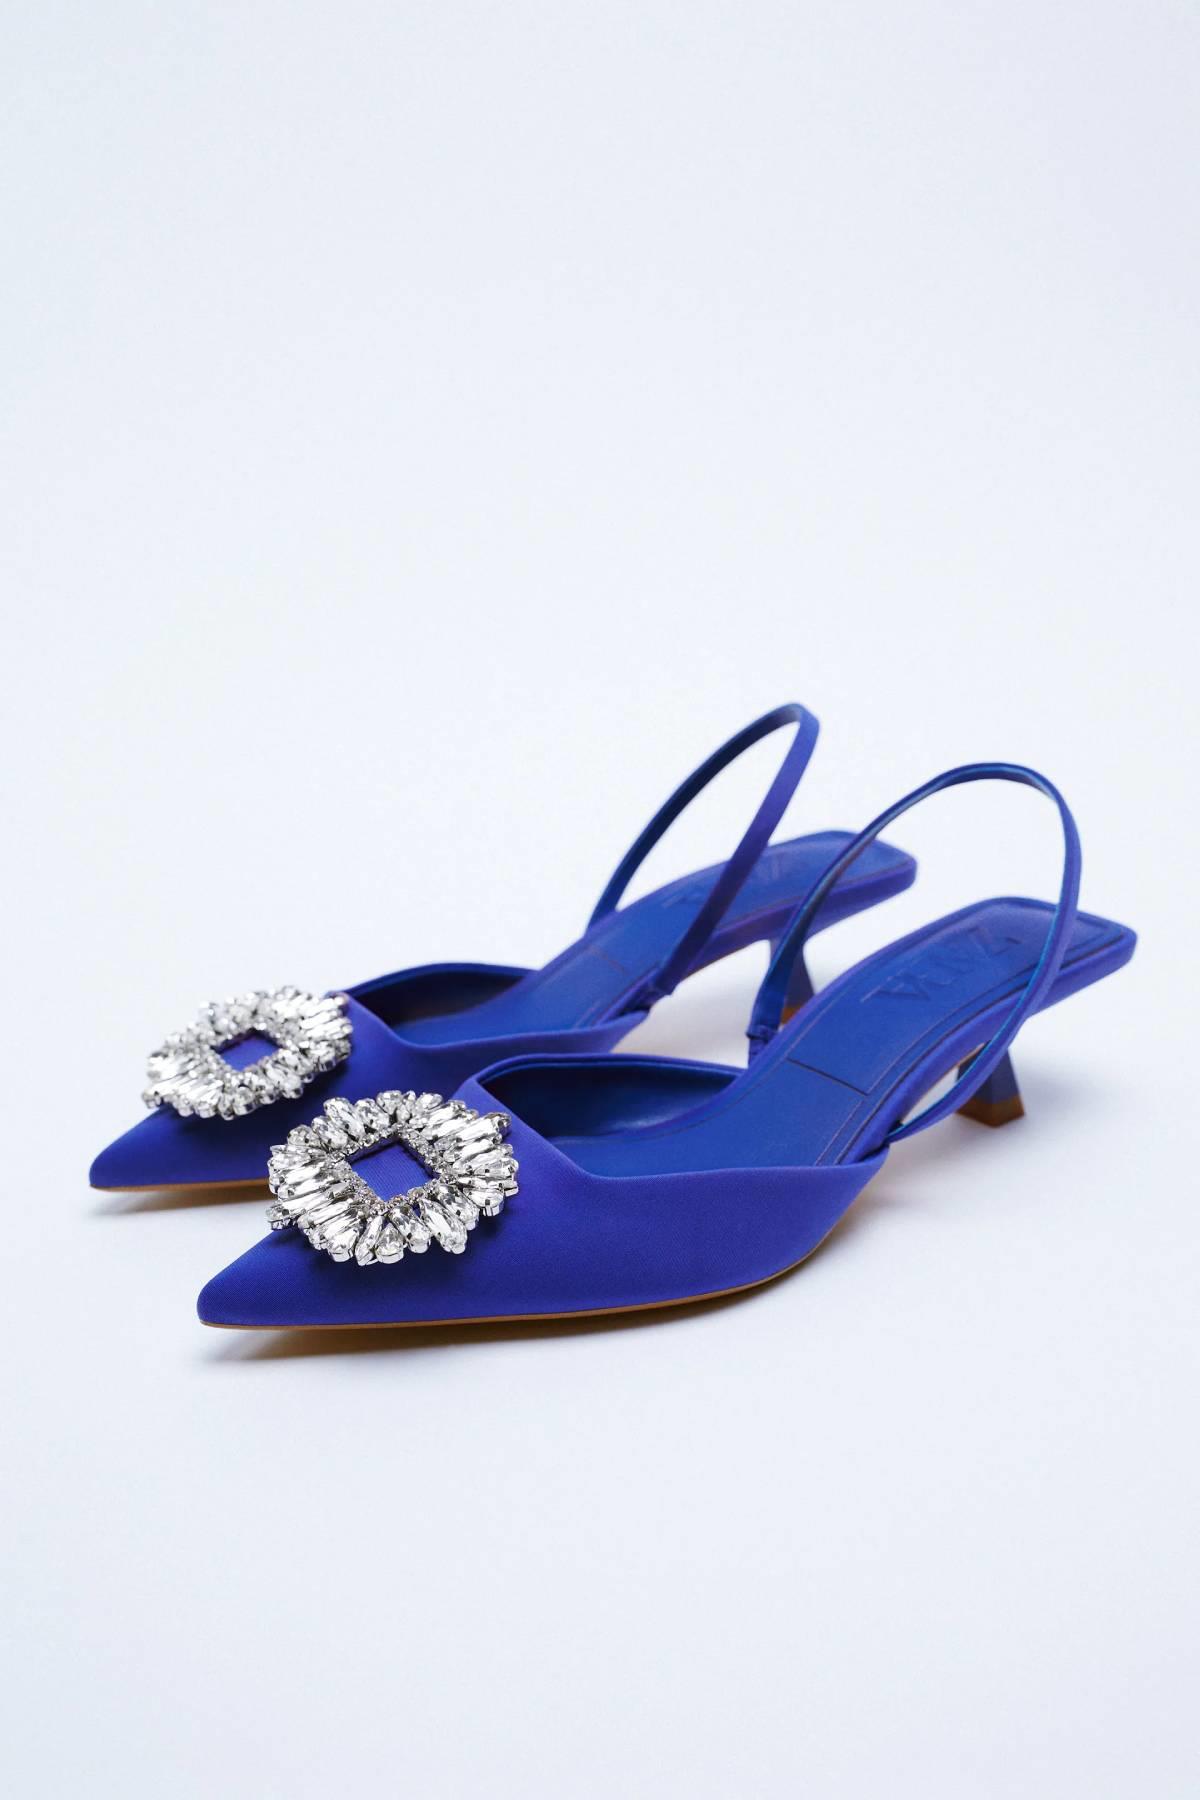 Zapatos azules con detalle de cristales